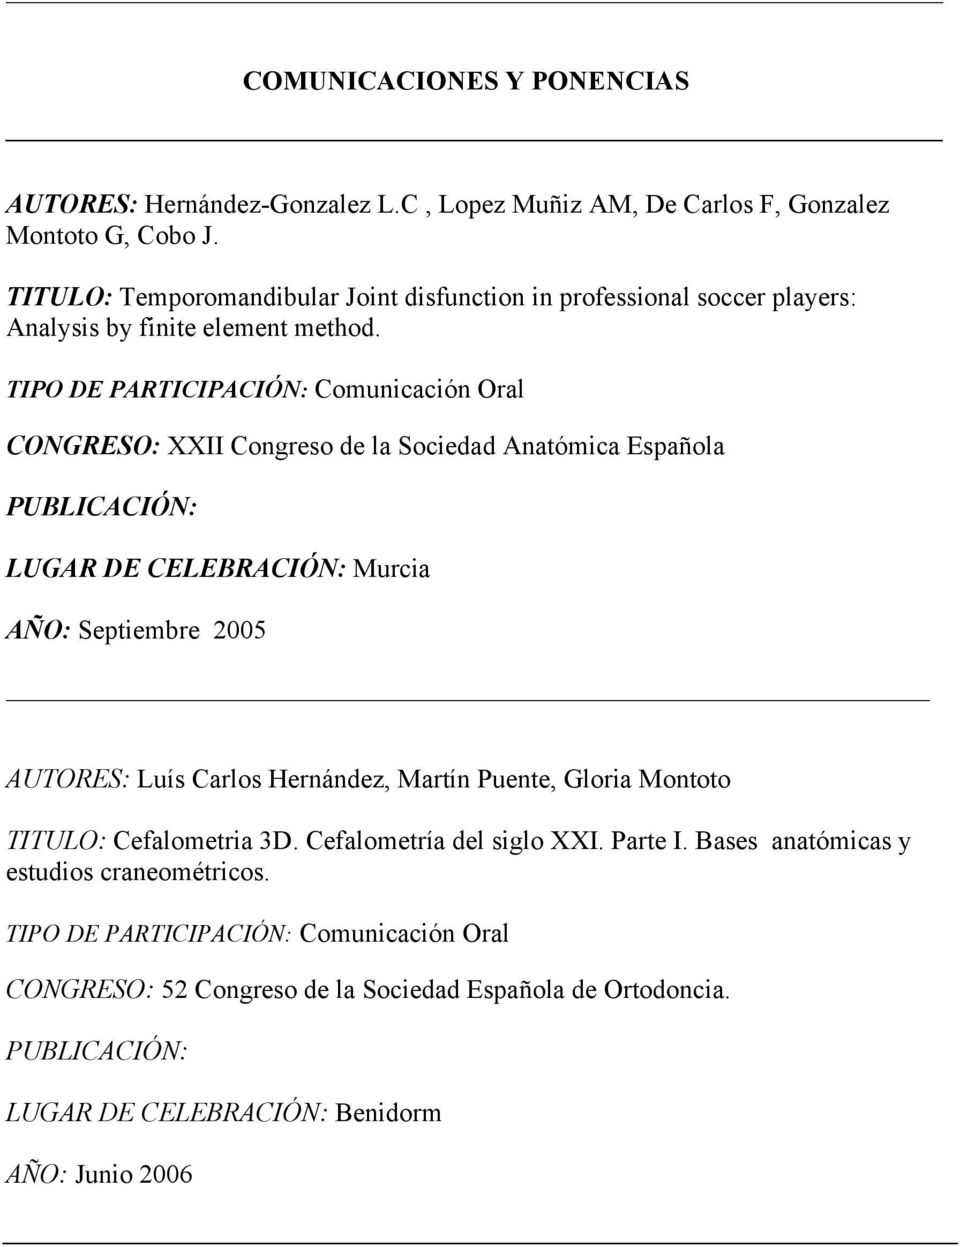 CONGRESO: XXII Congreso de la Sociedad Anatómica Española LUGAR DE CELEBRACIÓN: Murcia AÑO: Septiembre 2005 AUTORES: Luís Carlos Hernández, Martín